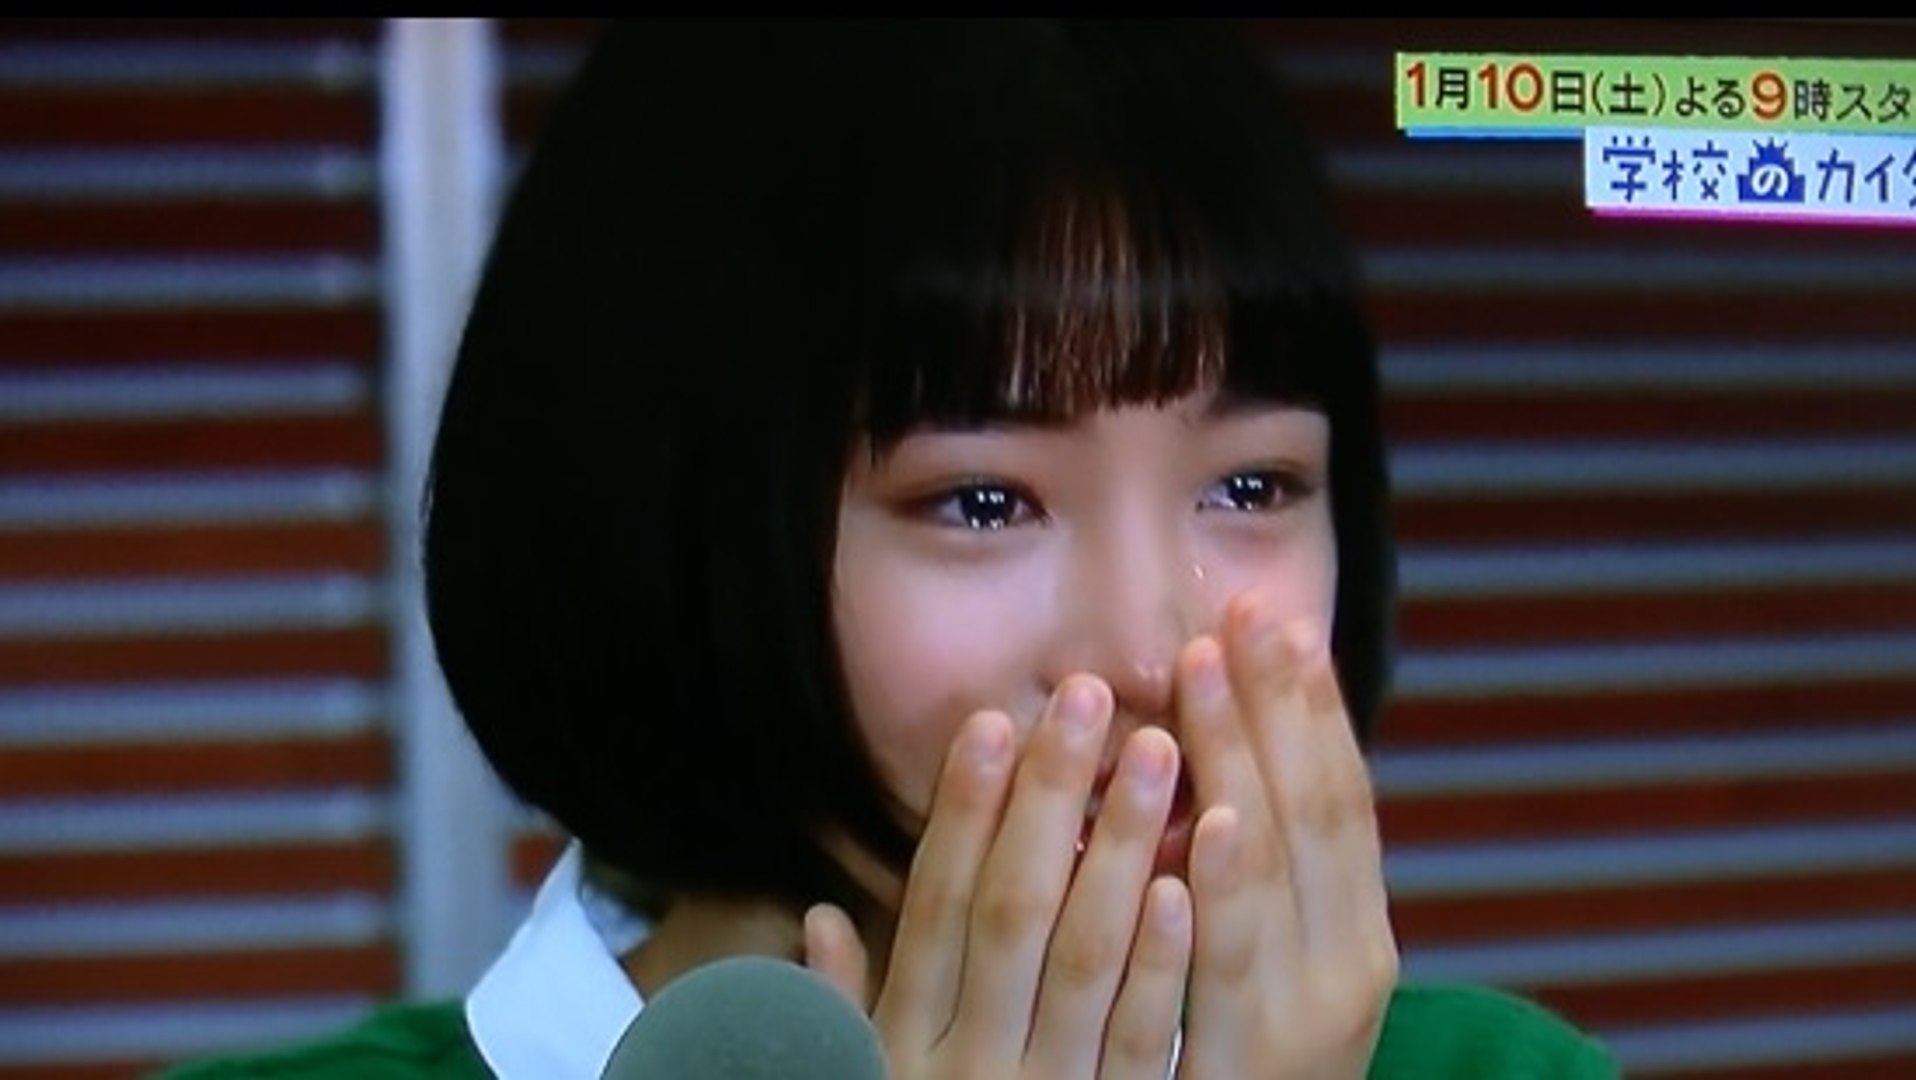 広瀬すず動画 学校へのカイダン 主演決定ドッキリ サプライズに涙 可愛すぎるw Suzu Hirose Japanese Actress 動画 Dailymotion